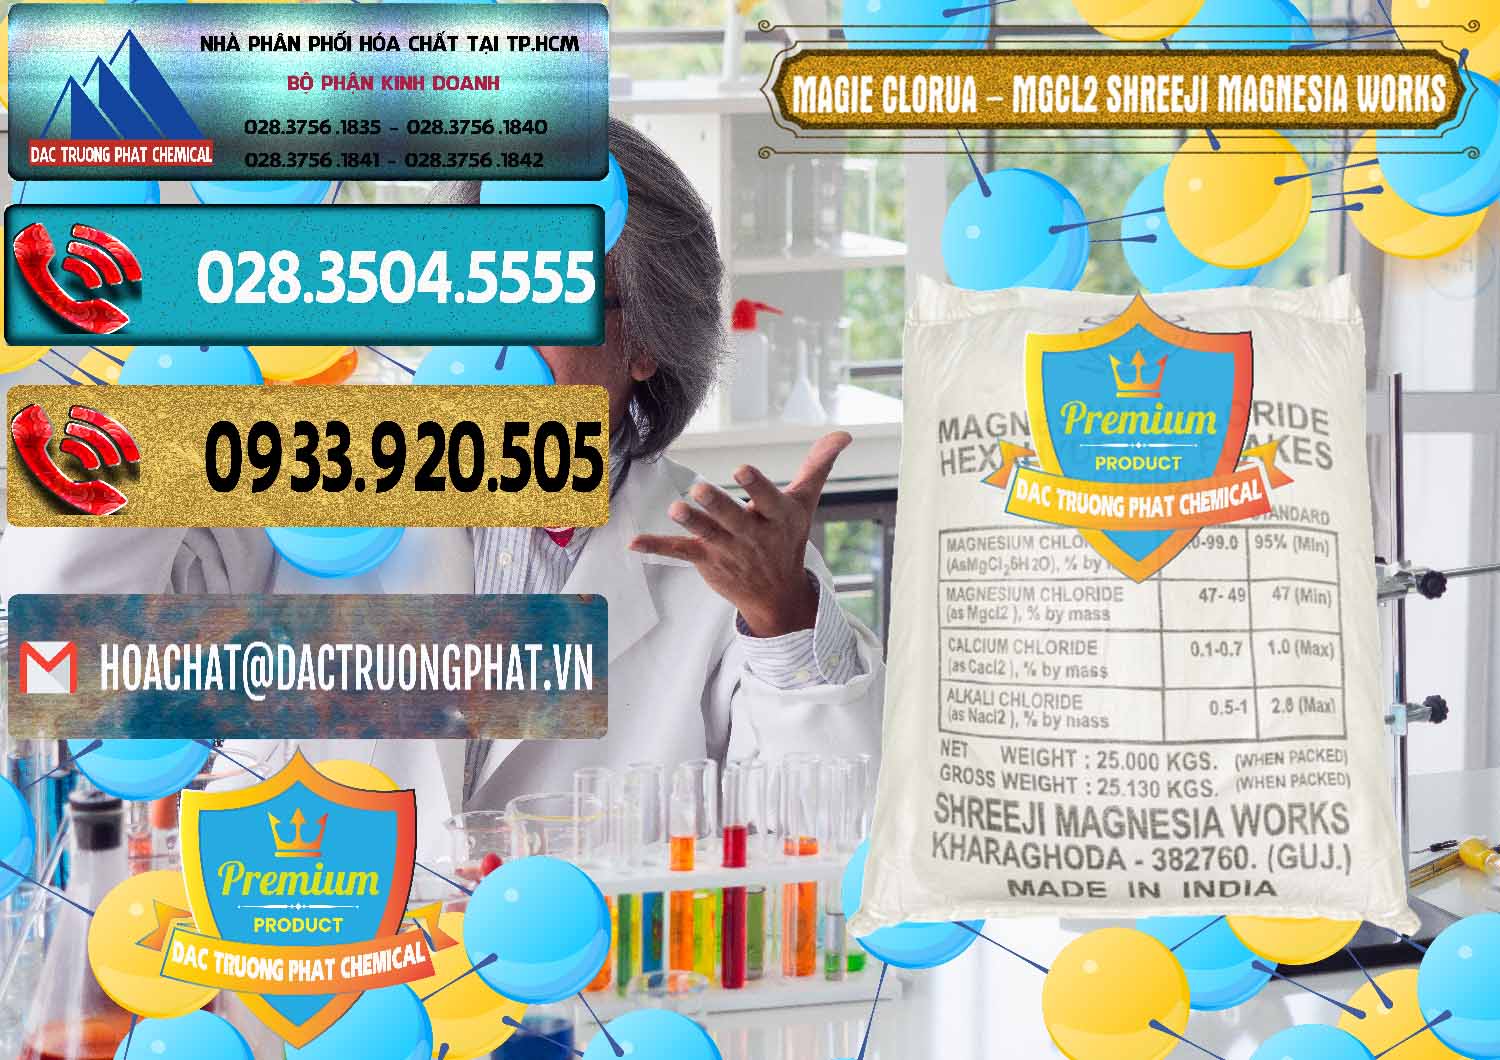 Cty nhập khẩu & bán Magie Clorua – MGCL2 Dạng Vảy Shreeji Magnesia Works Ấn Độ India - 0285 - Chuyên cung cấp _ phân phối hóa chất tại TP.HCM - hoachatdetnhuom.com